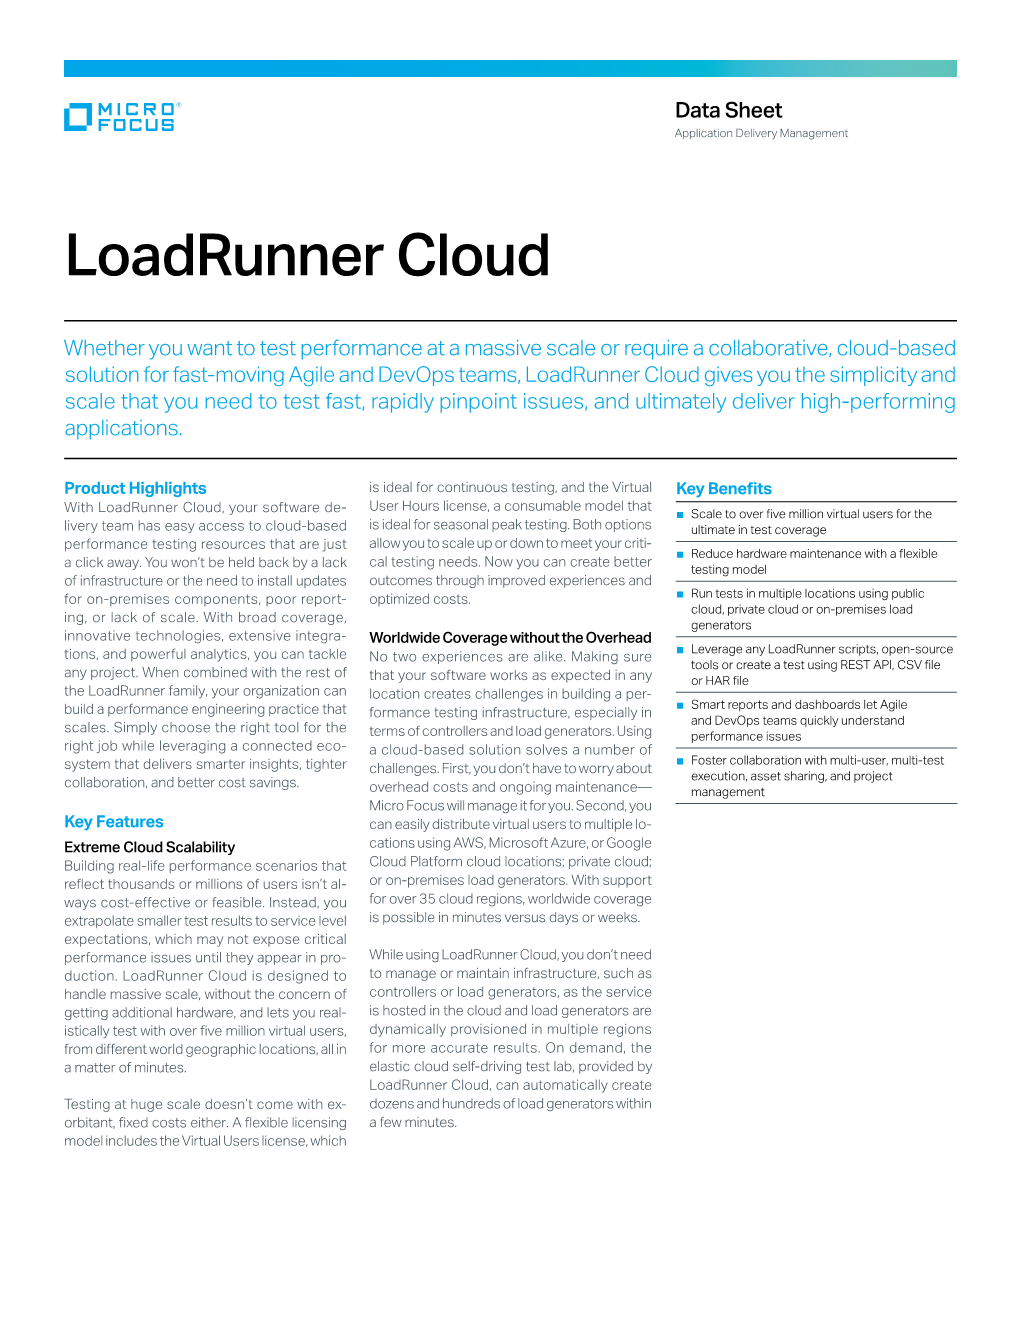 Loadrunner Cloud Data Sheet